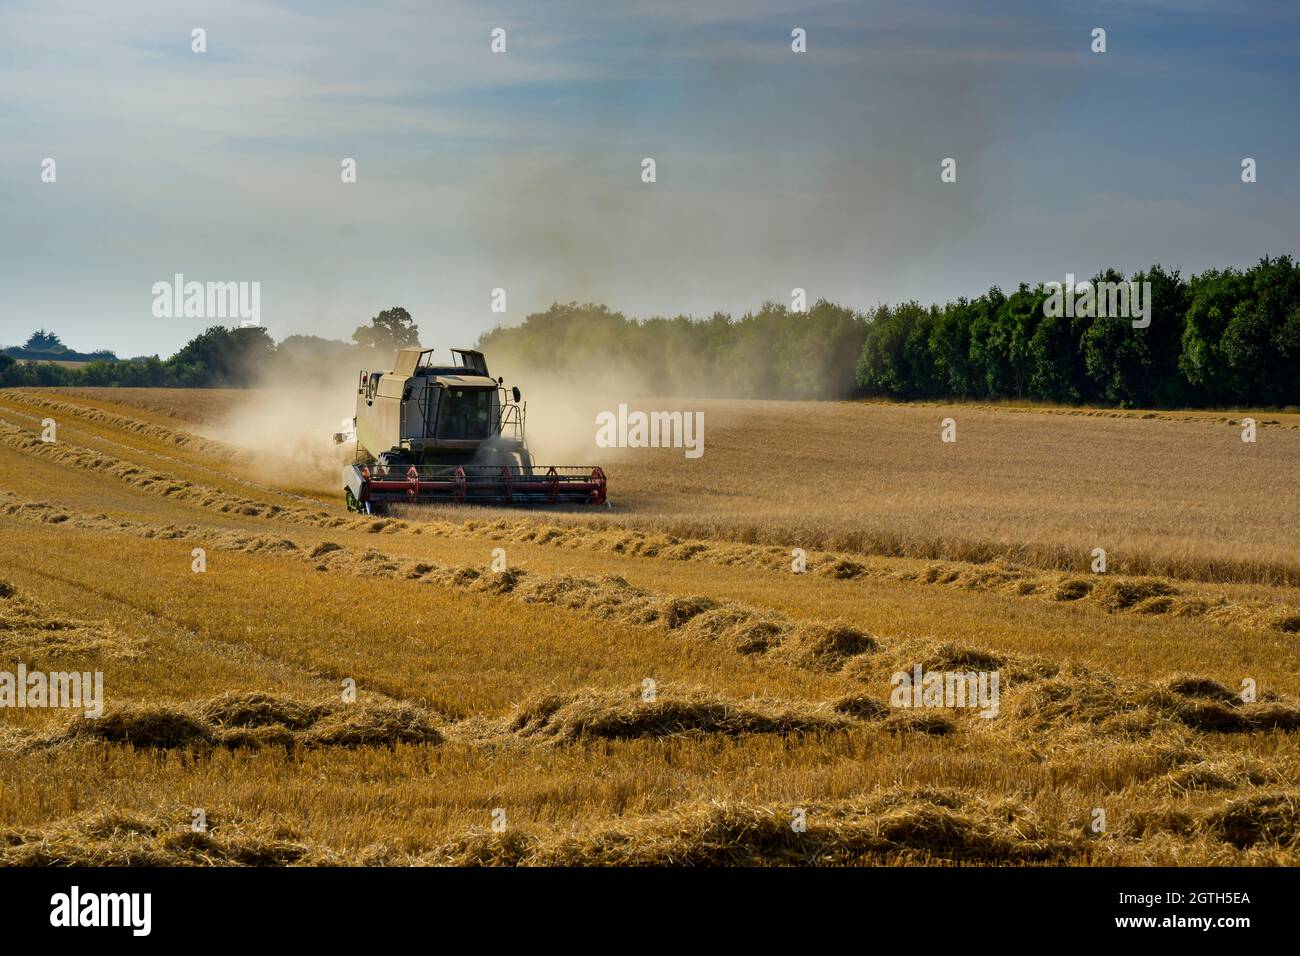 Potente macchina agricola (mietitrebbia Claas) per il taglio e la raccolta di grano in campi polverosi - North Yorkshire, Inghilterra, Regno Unito Foto Stock